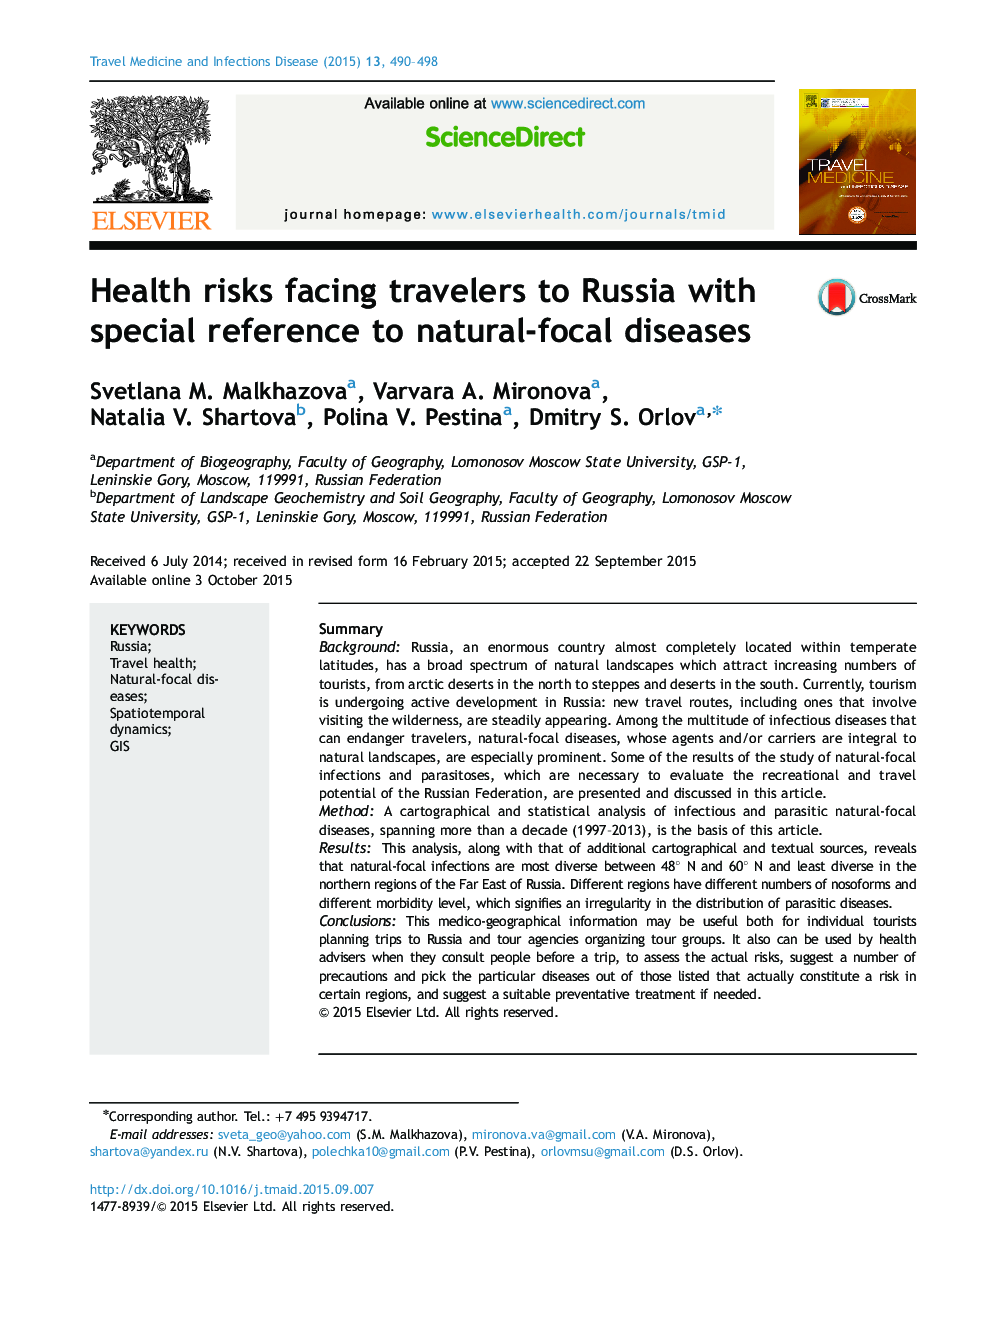 خطرات بهداشت روانی مسافران به روسیه با توجه ویژه به بیماری های طبیعی کانونی 